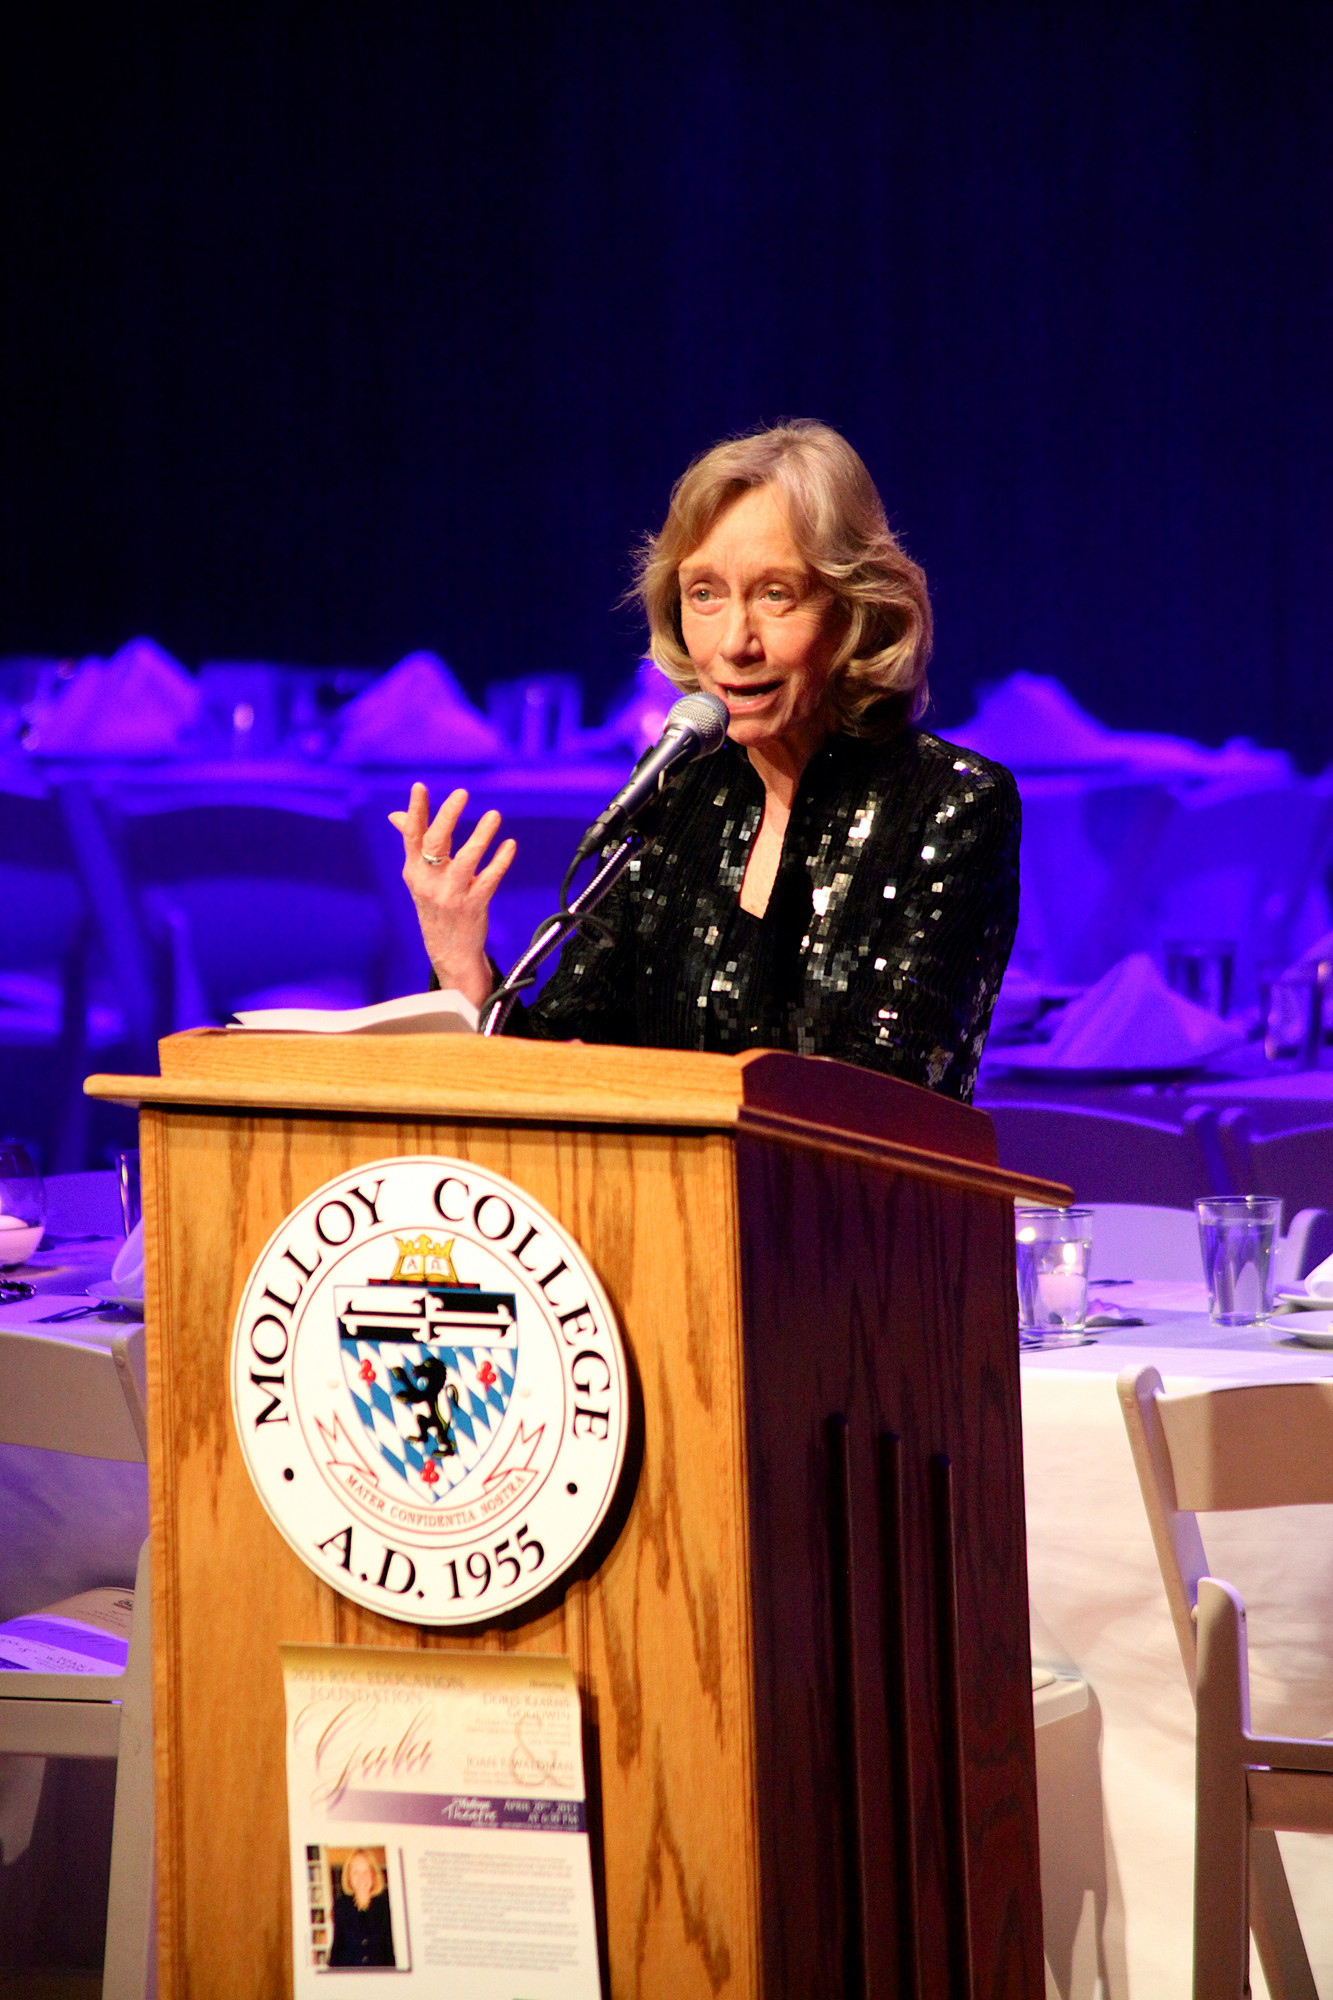 Doris Kearns Goodwin gave a speech after being honored.